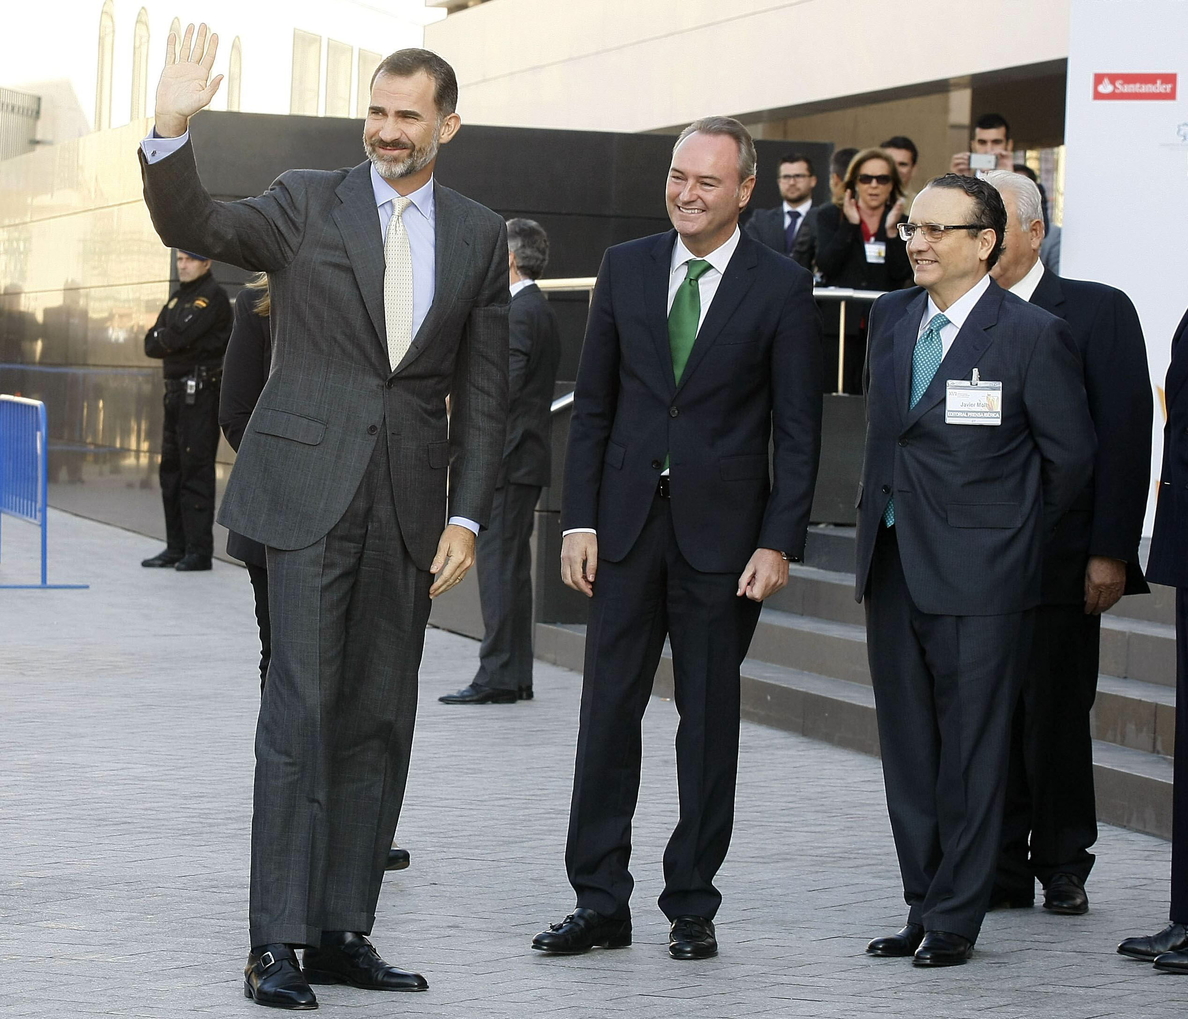 El Rey elogia a las pymes por crear empleo y Sánchez pide más competencia en sectores estratégicos